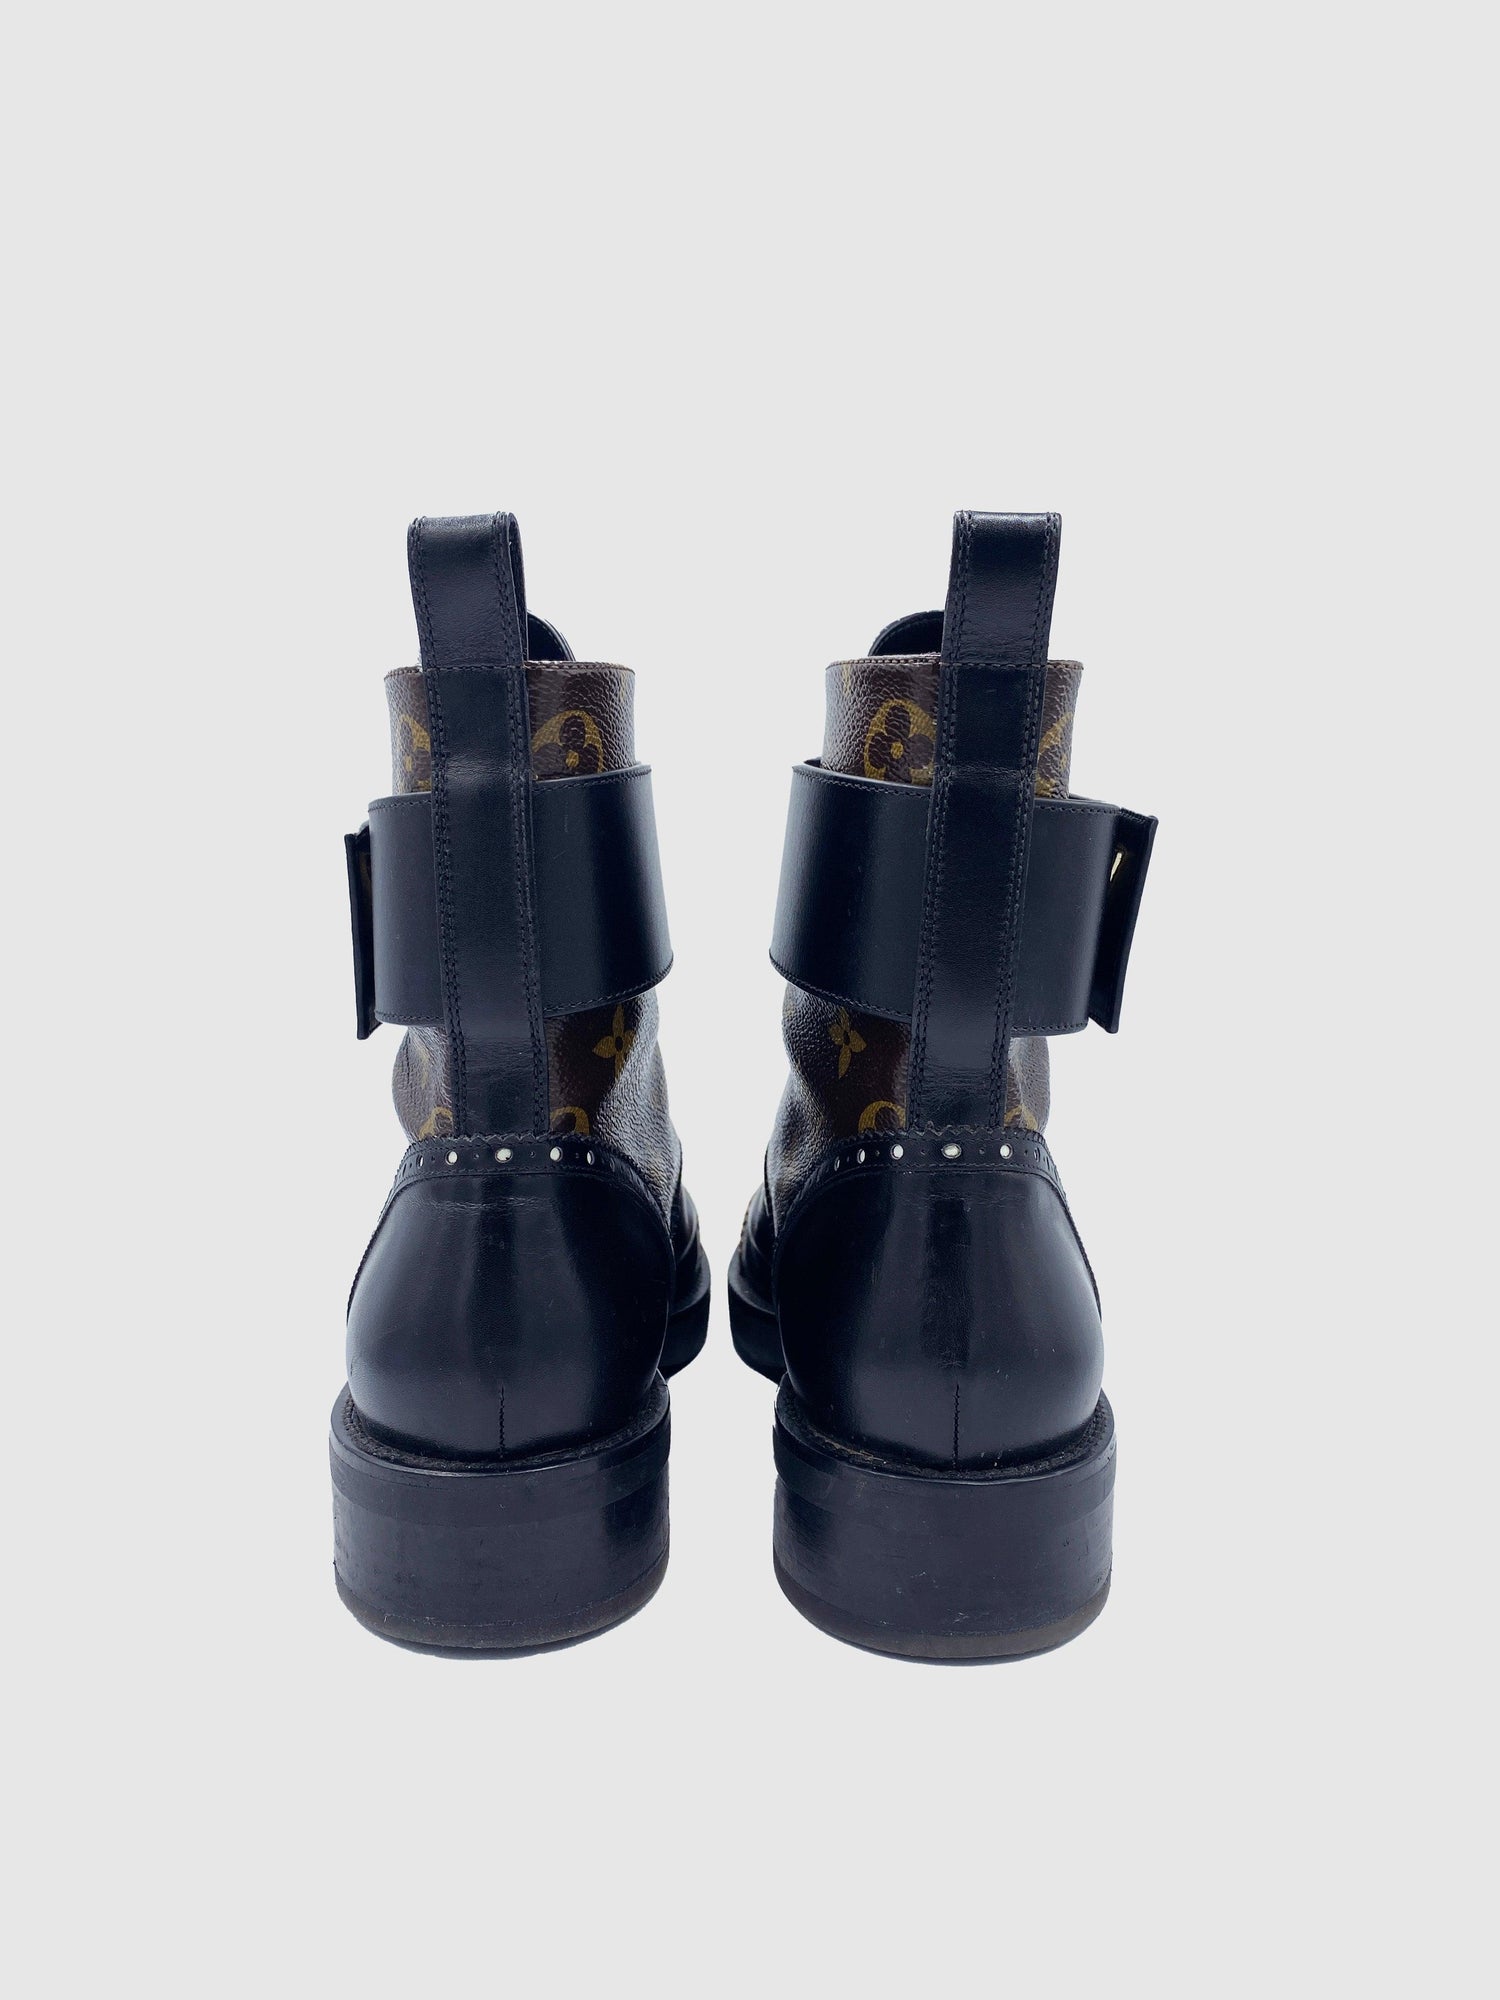 Louis Vuitton Monogram Rager Combat Boots - Size 40 - Second Nature Boutique